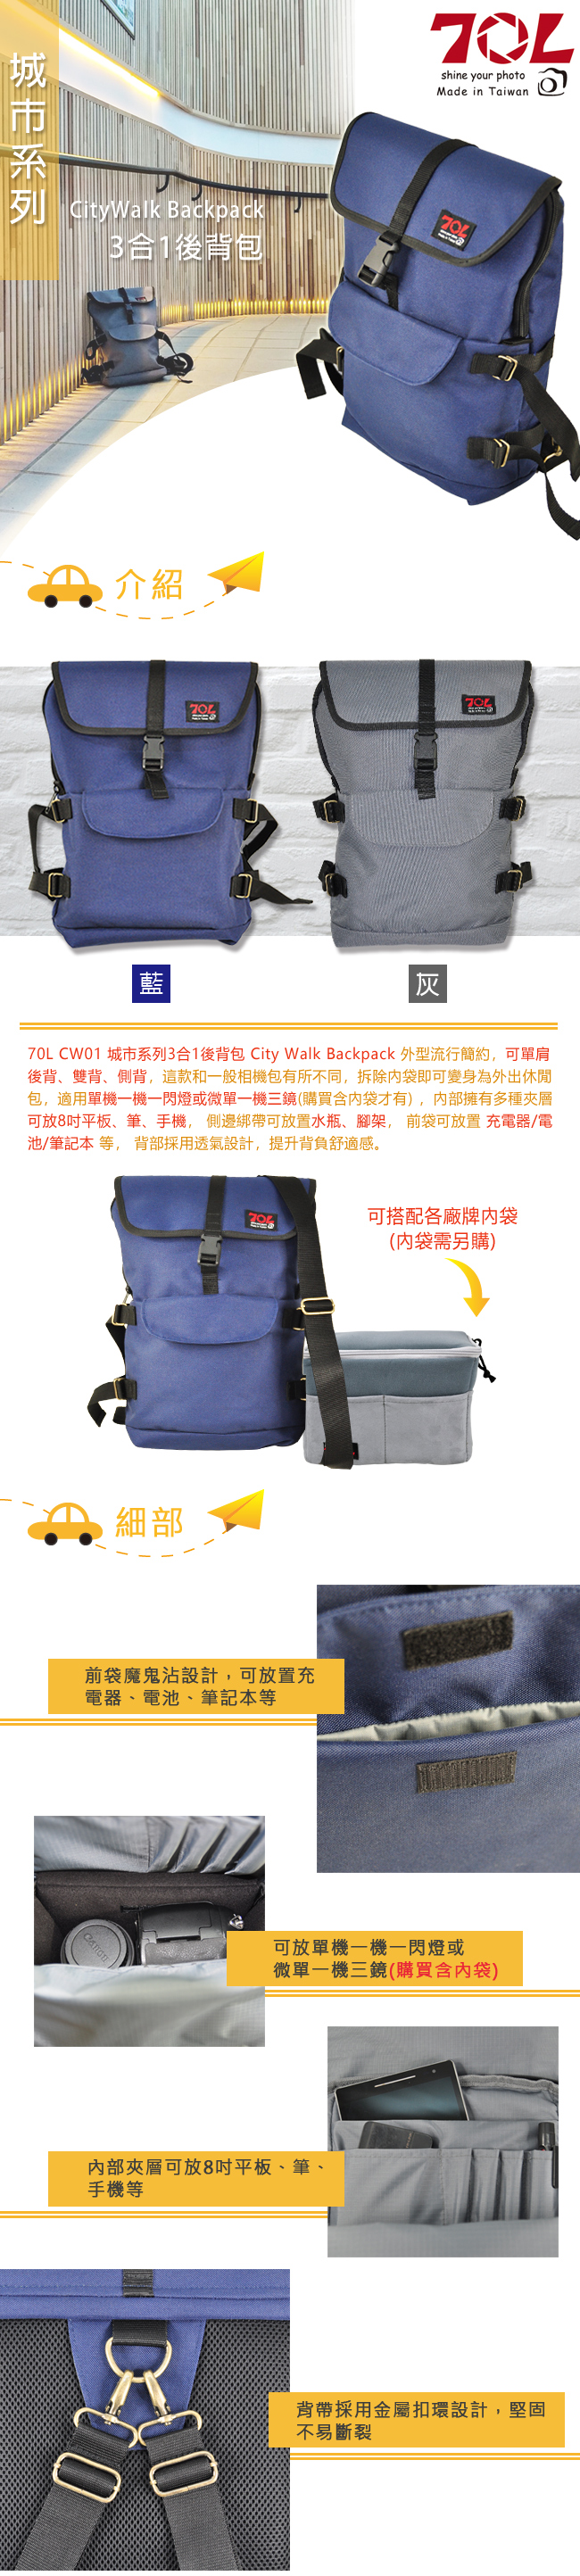 (促) 70L CW01 城市系列3合1後背包 CityWalk Backpack